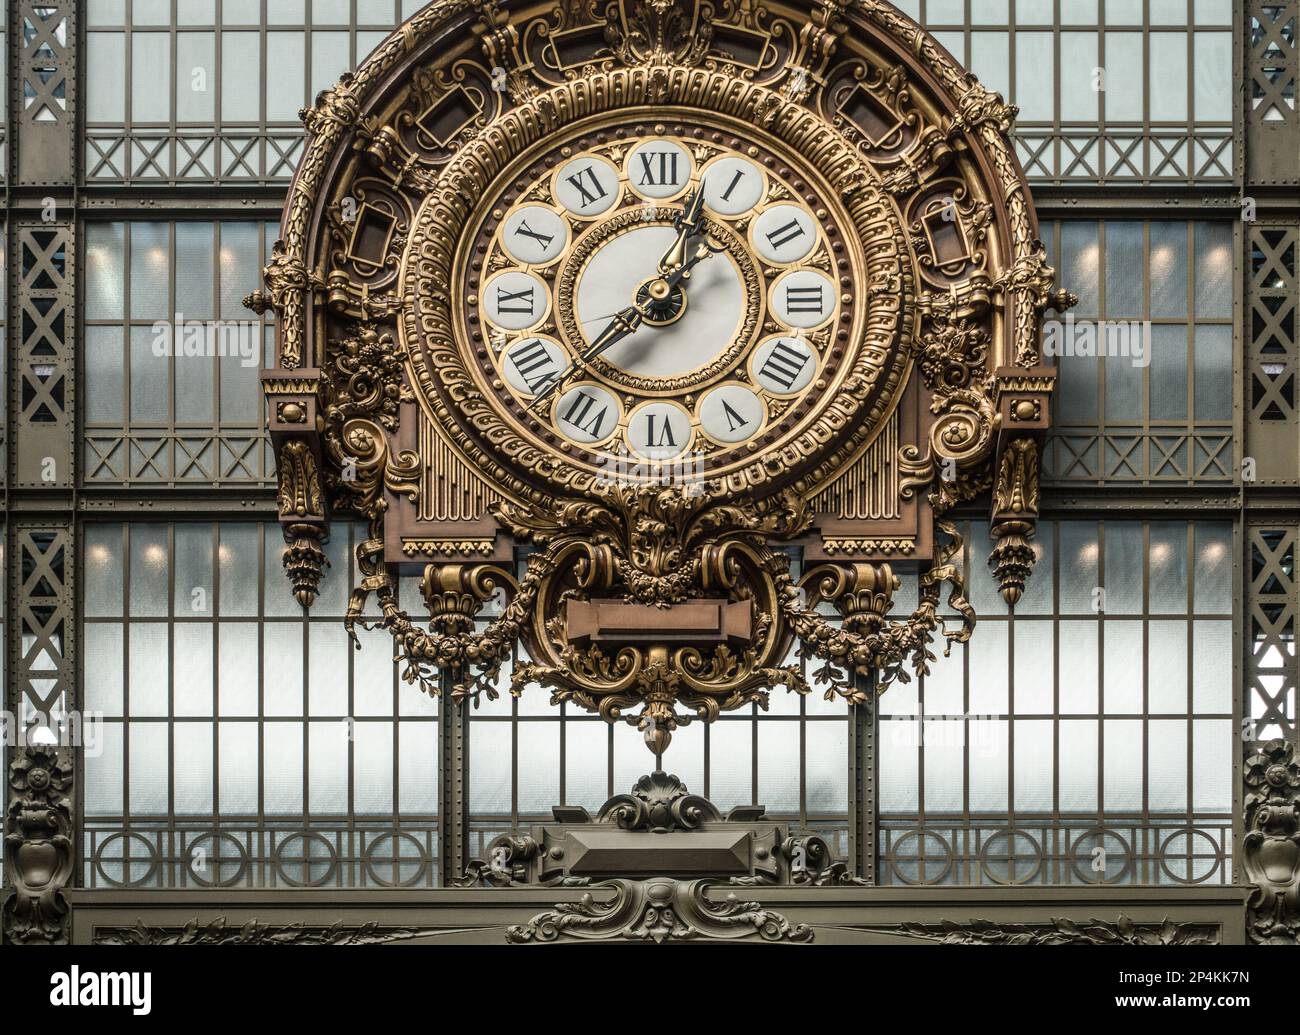 Horloge et fenêtre, Musée d'Orsay, Paris, France Banque D'Images